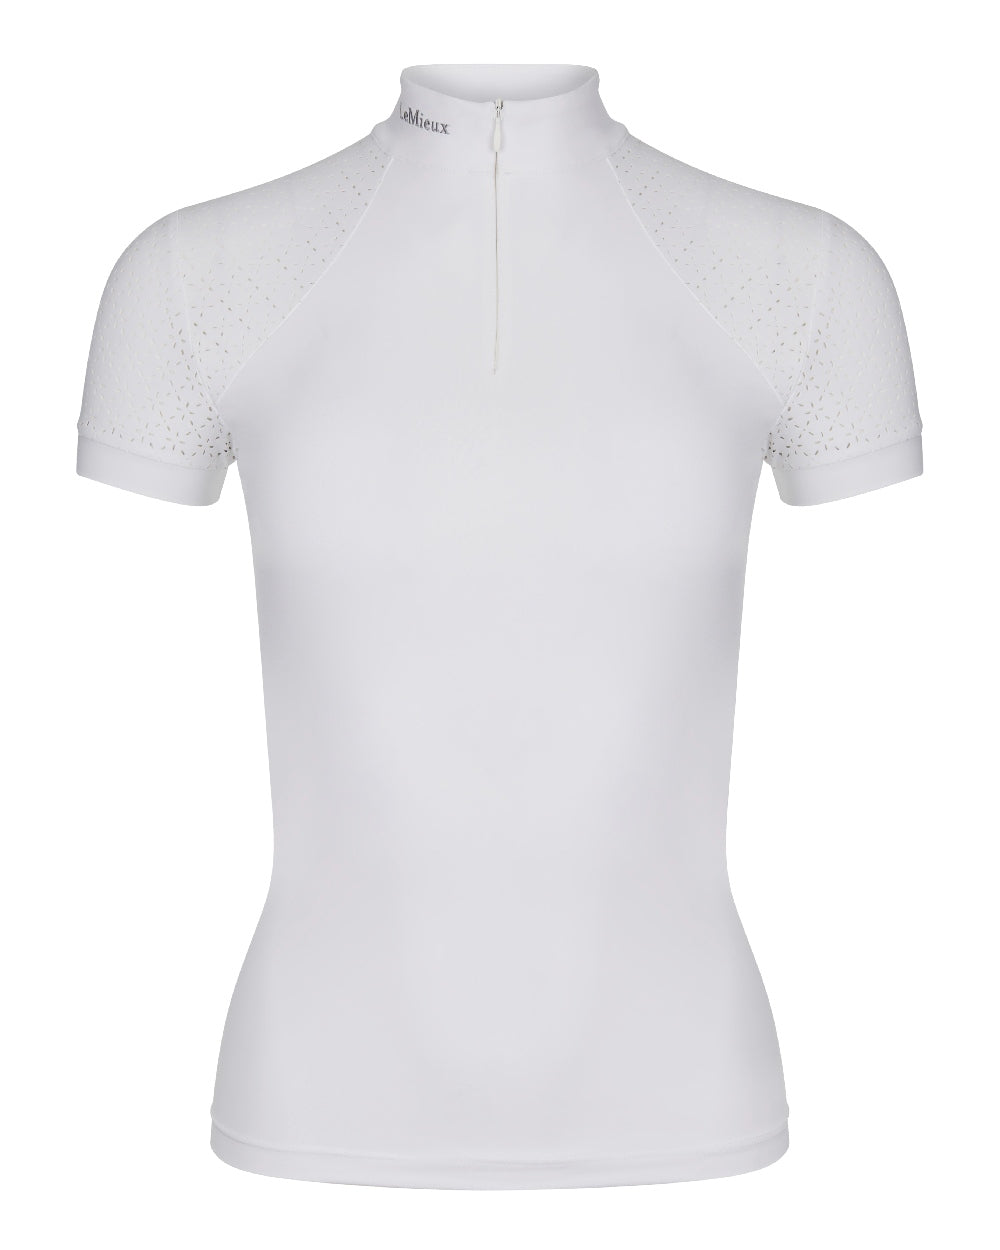 White coloured LeMieux Olivia Short Sleeve Show Shirts on white background 